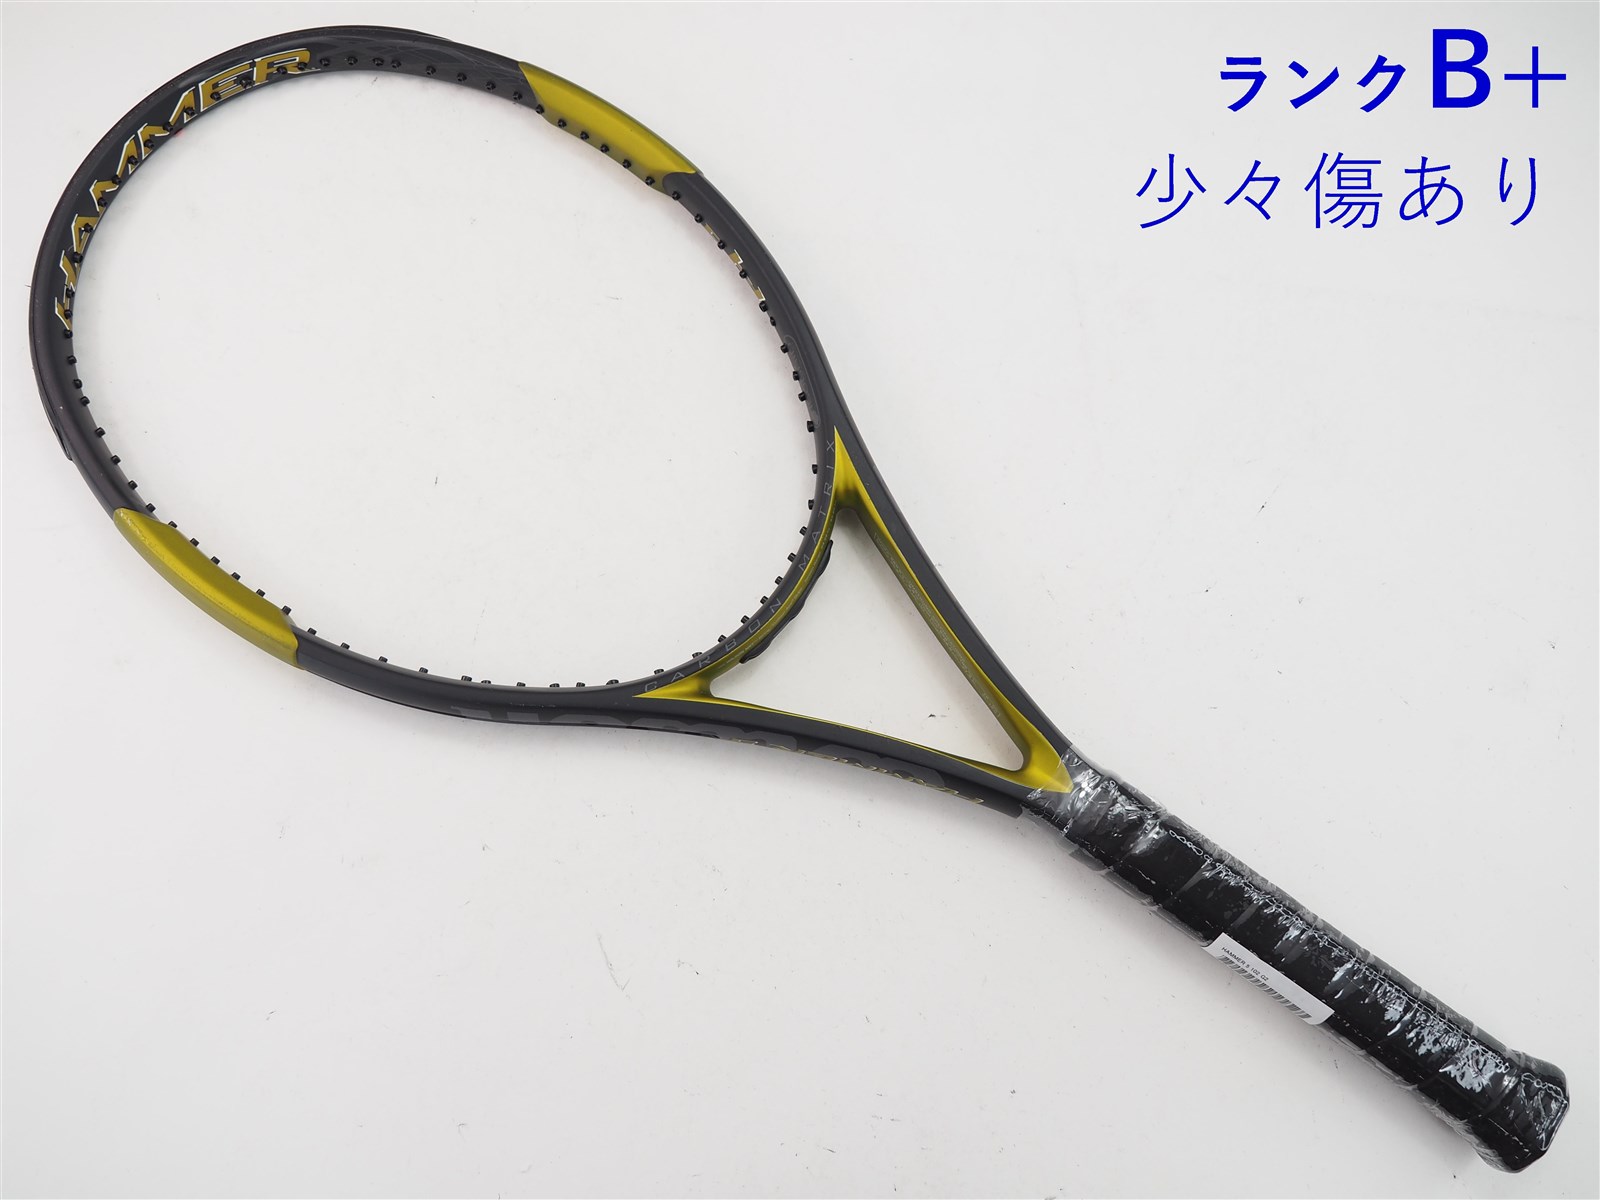 テニスラケット ウィルソン ハンマー 5 102【インポート】 (G2)WILSON HAMMER 5 102